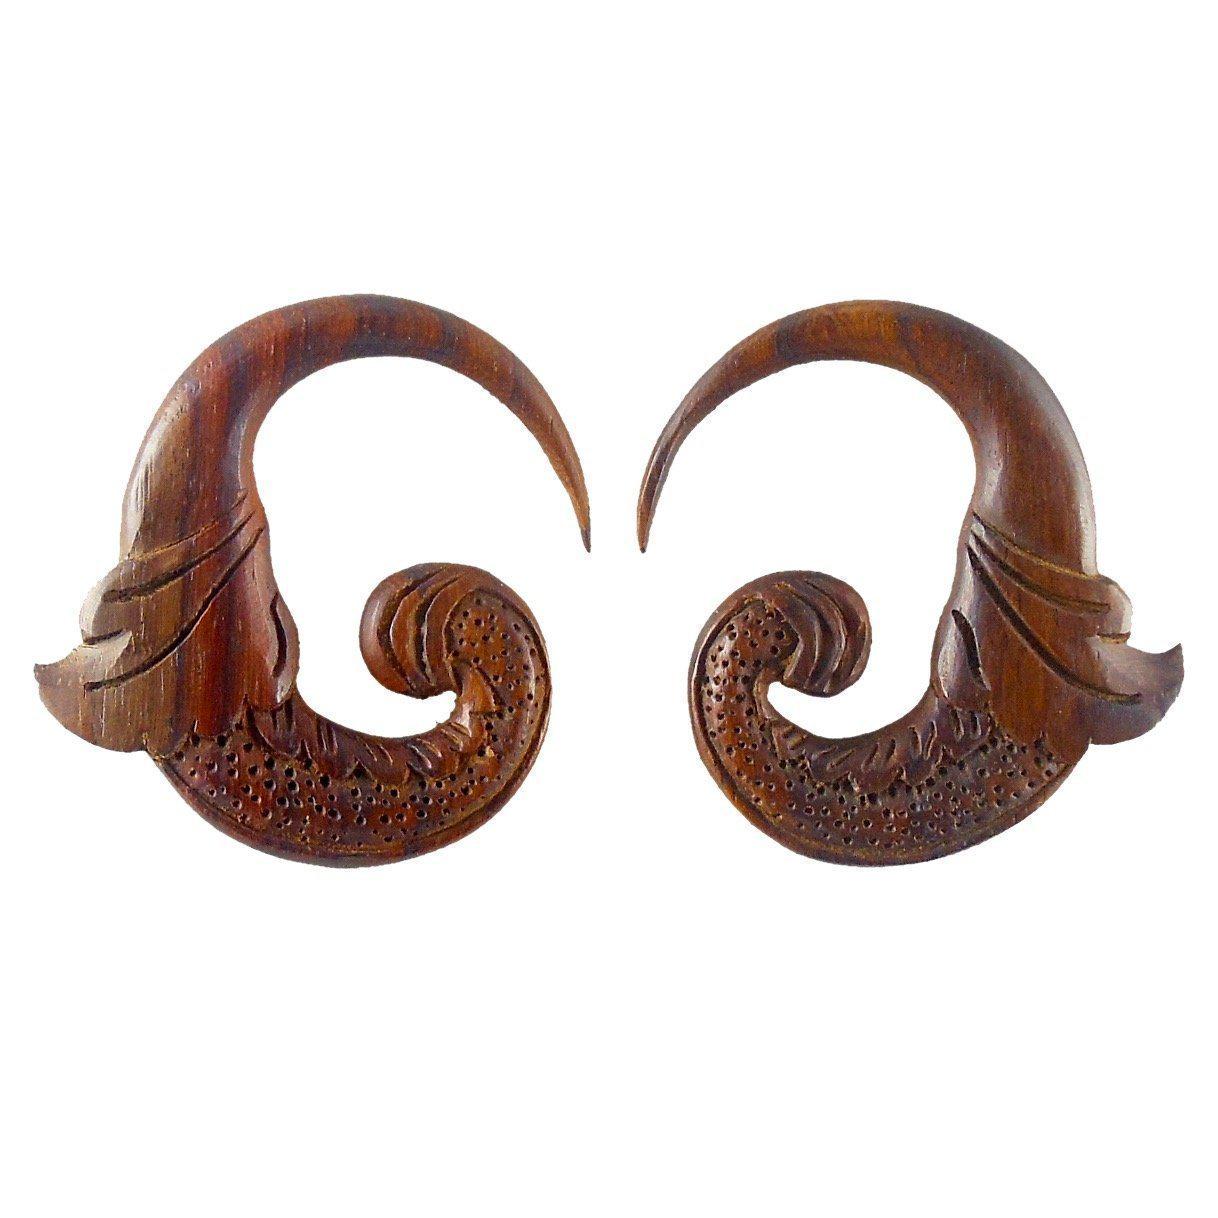 Gauge Earrings :|: Nectar. Tropical Wood 2g gauge earrings.